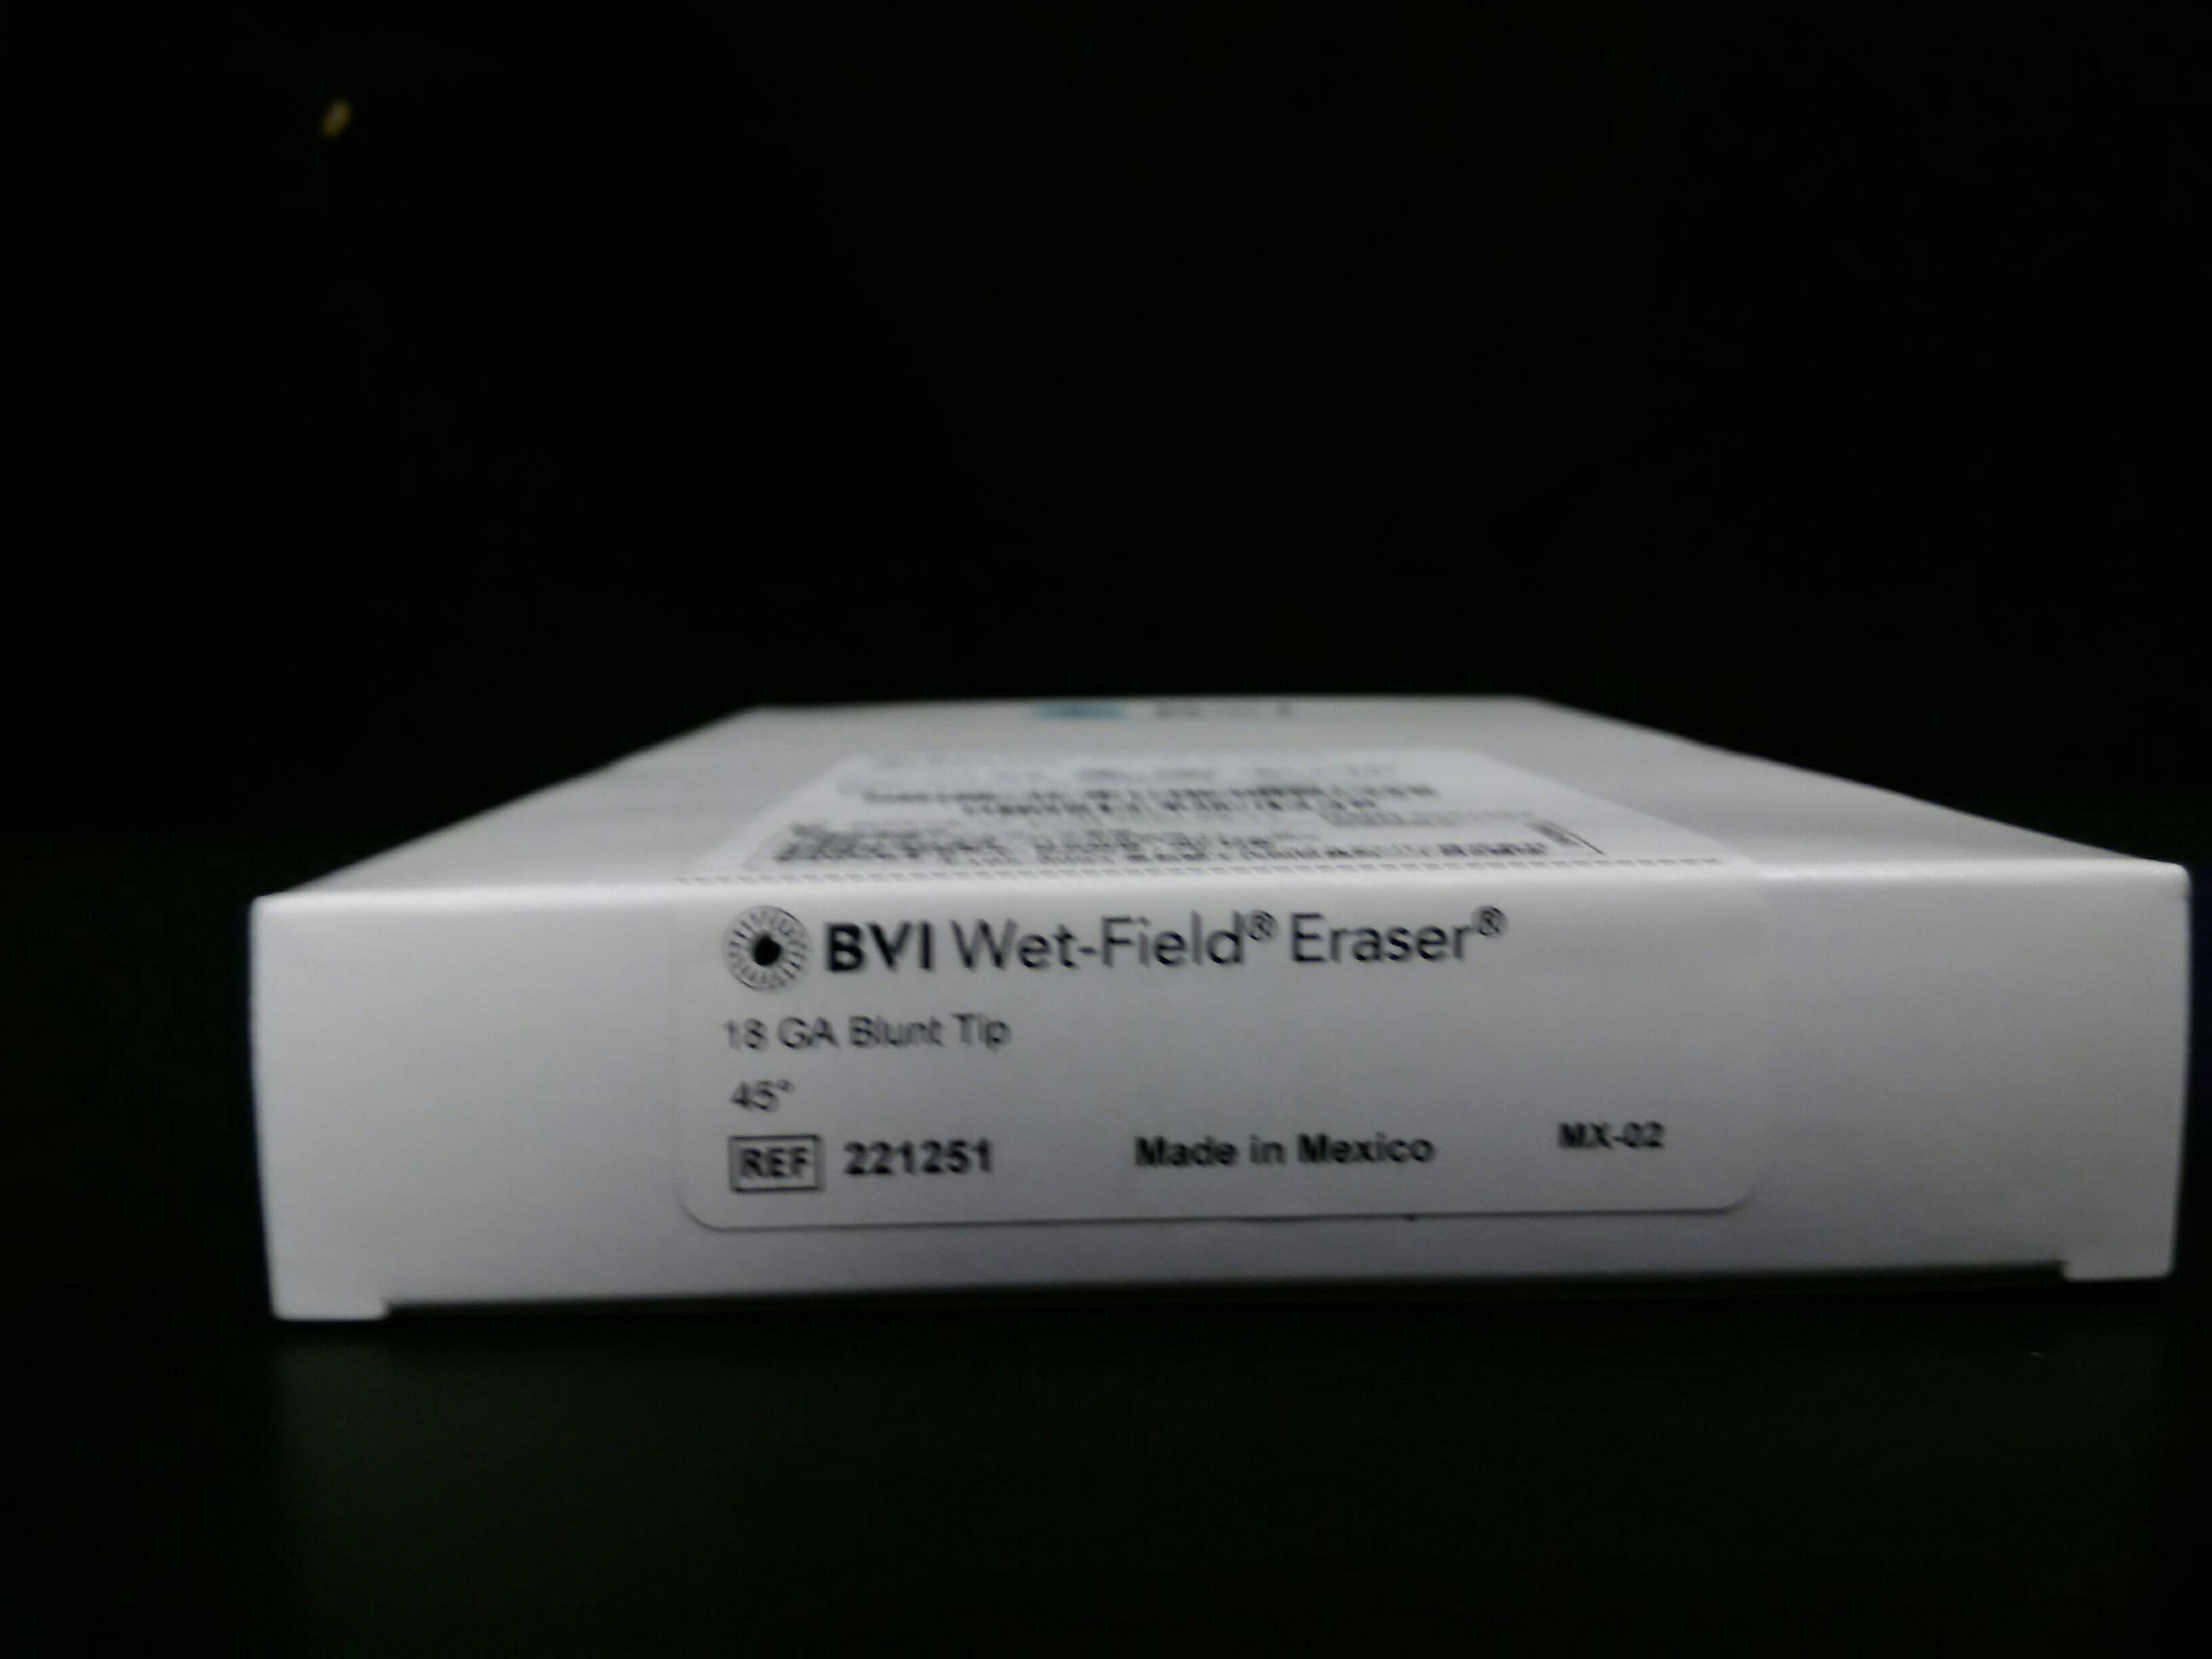 BEAVER-VISITEC 221251 WET-FIELD Eraser, 18GA BLUNT TIP, ANGLED 45DEG, 10/BX